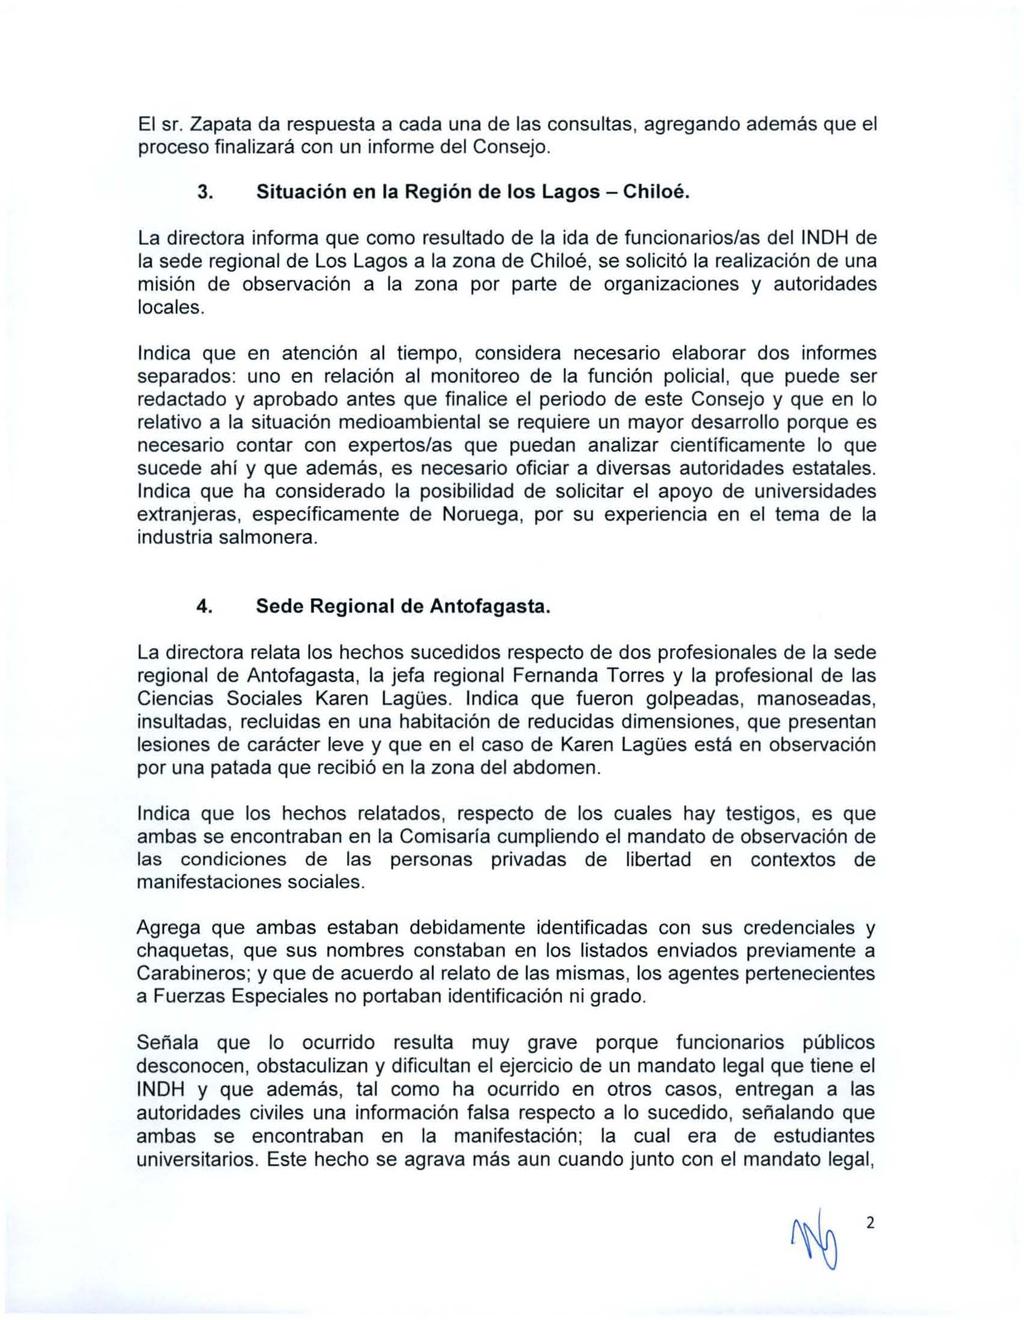 El sr. Zapata da respuesta a cada una de las consultas, agregando además que el proceso finalizará con un informe del Consejo. 3. Situación en la Región de los Lagos - Chiloé.